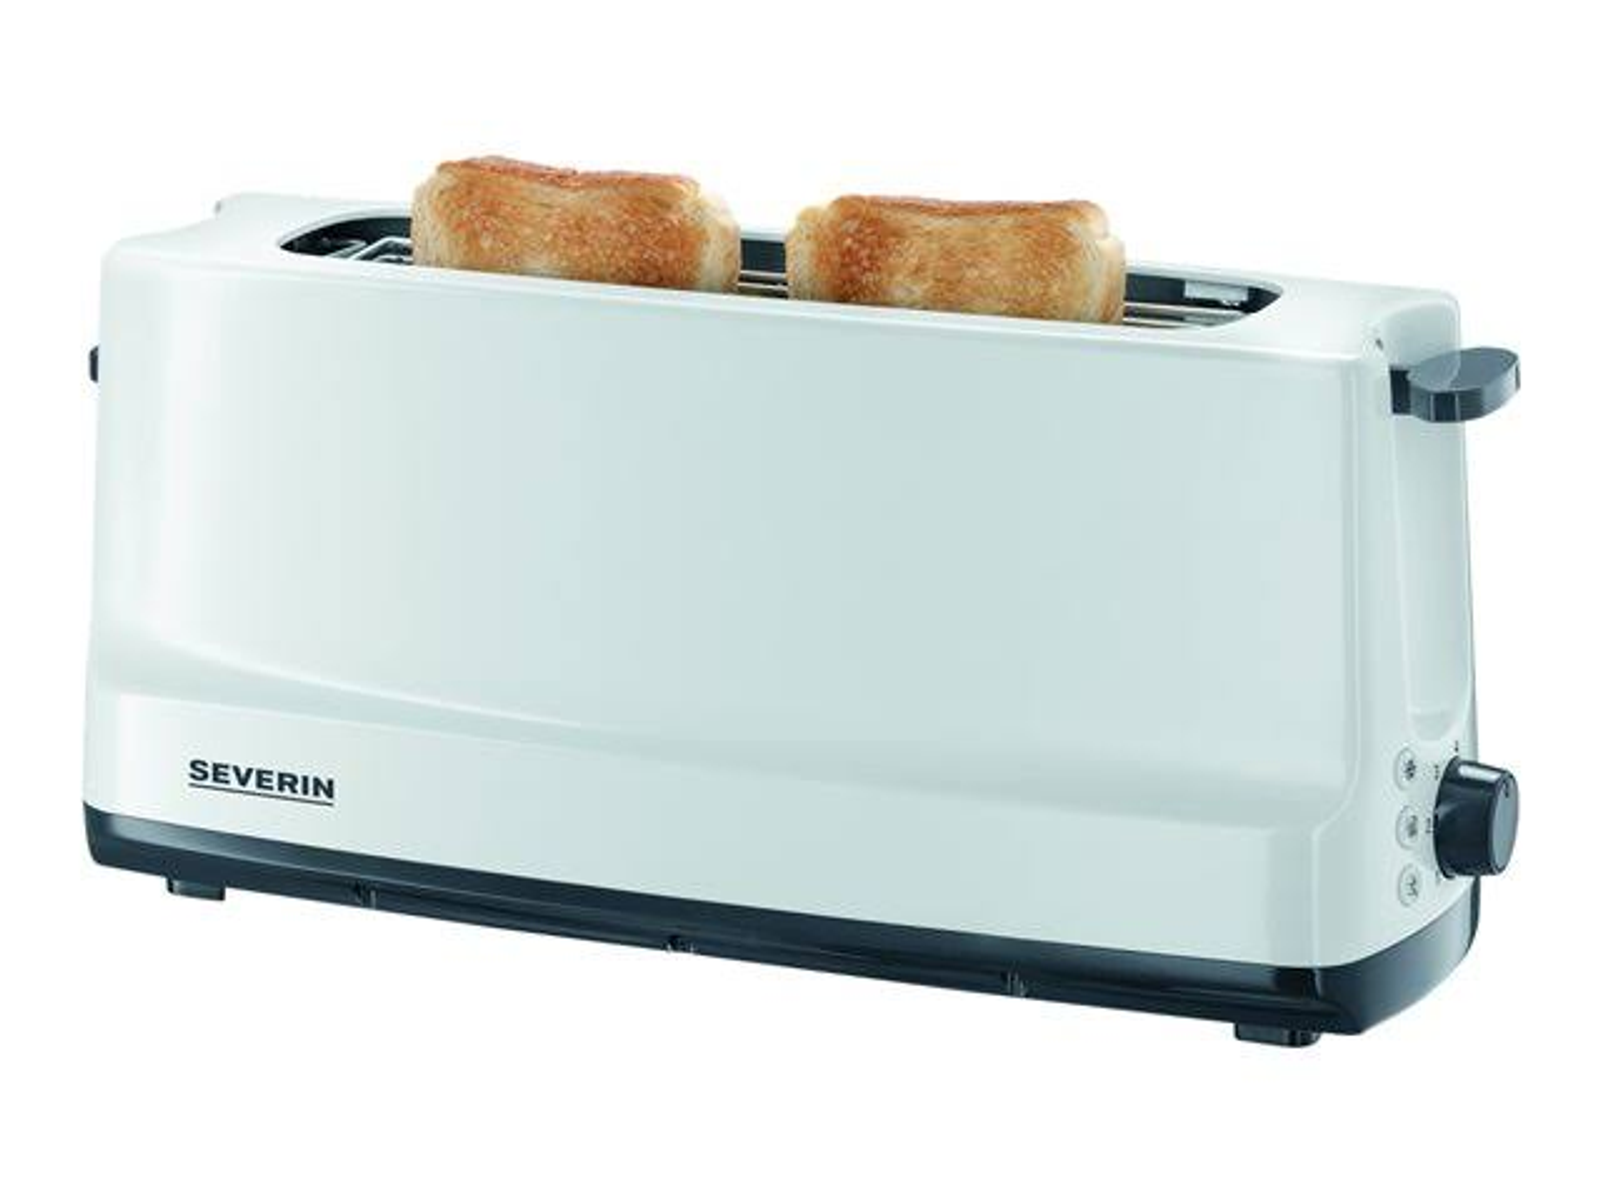 Schlitze: AT (800 1,0) Toaster SEVERIN Weiß Watt, 2232